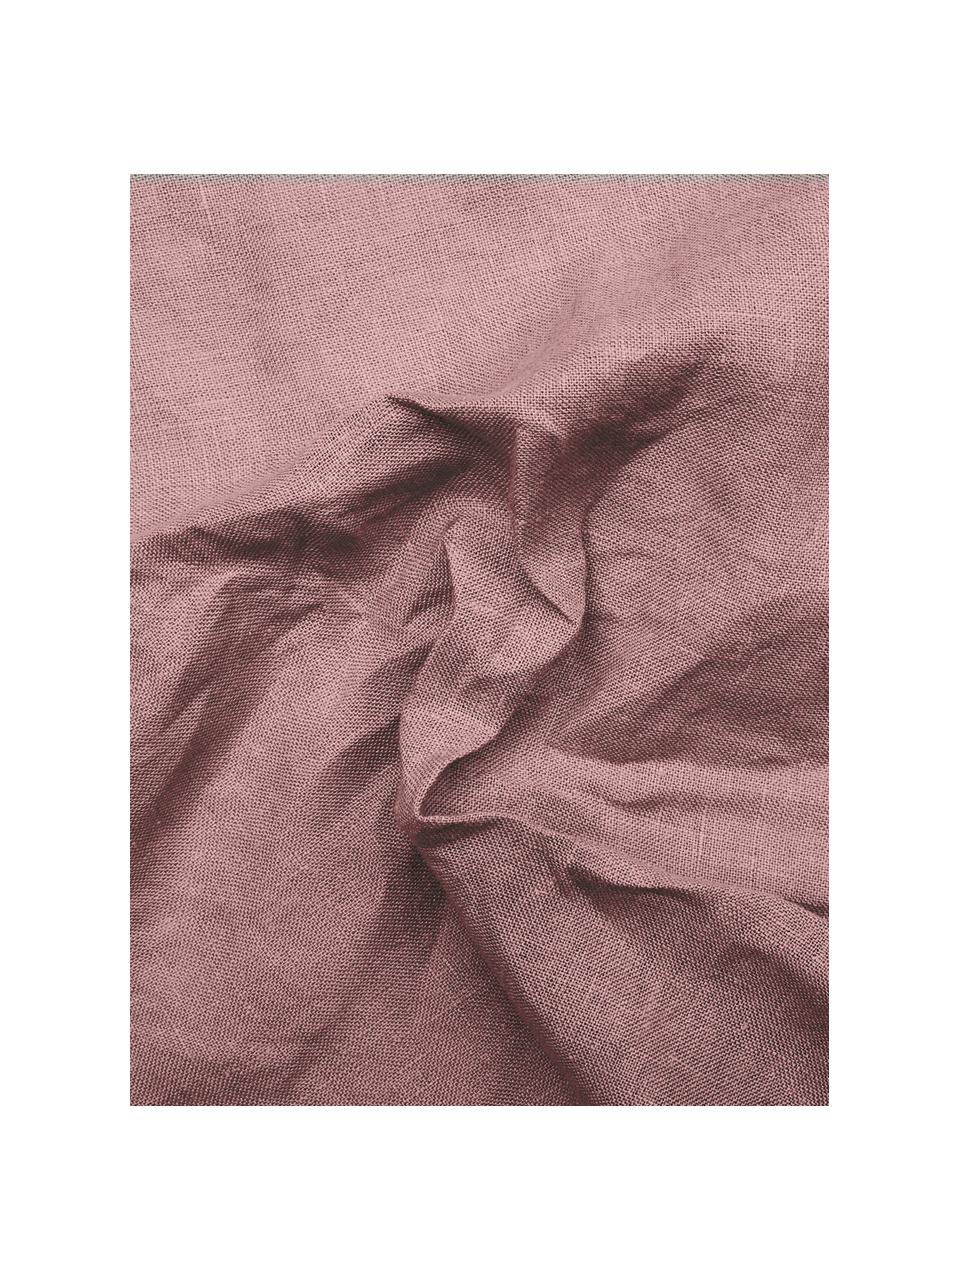 Bieżnik z lnu Pom Pom, Len, Brudny różowy, S 40 x D 150 cm